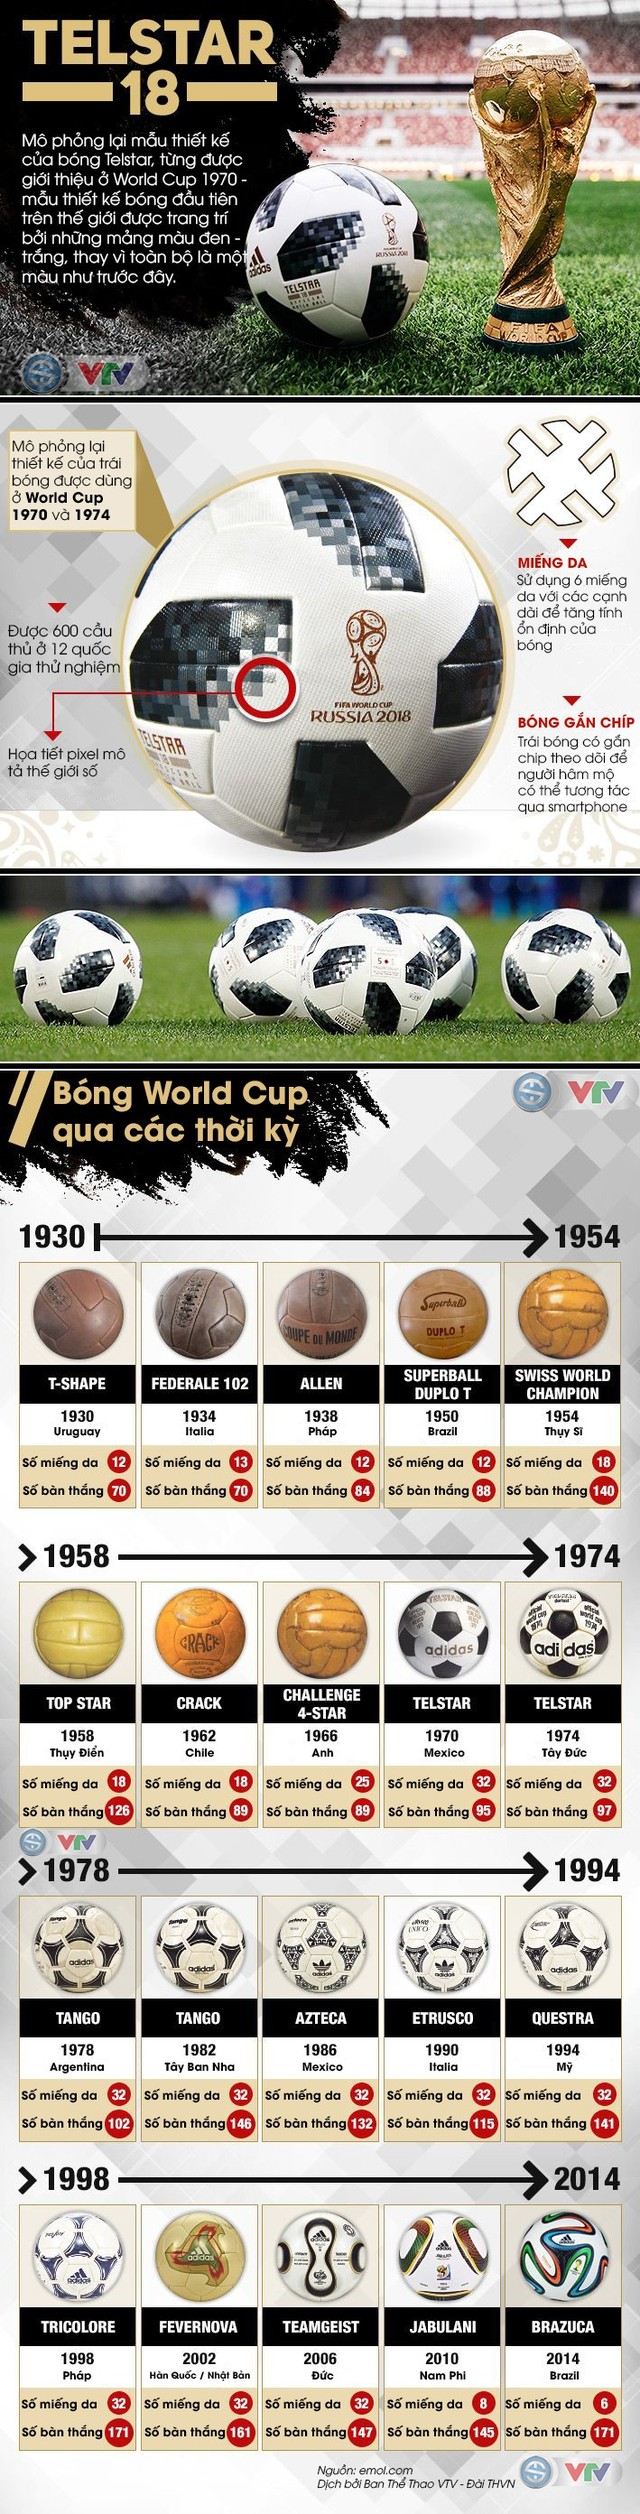 Infographic: Những điều cần biết về Telstar 18 - bóng chính thức của World Cup 2018 - Ảnh 1.